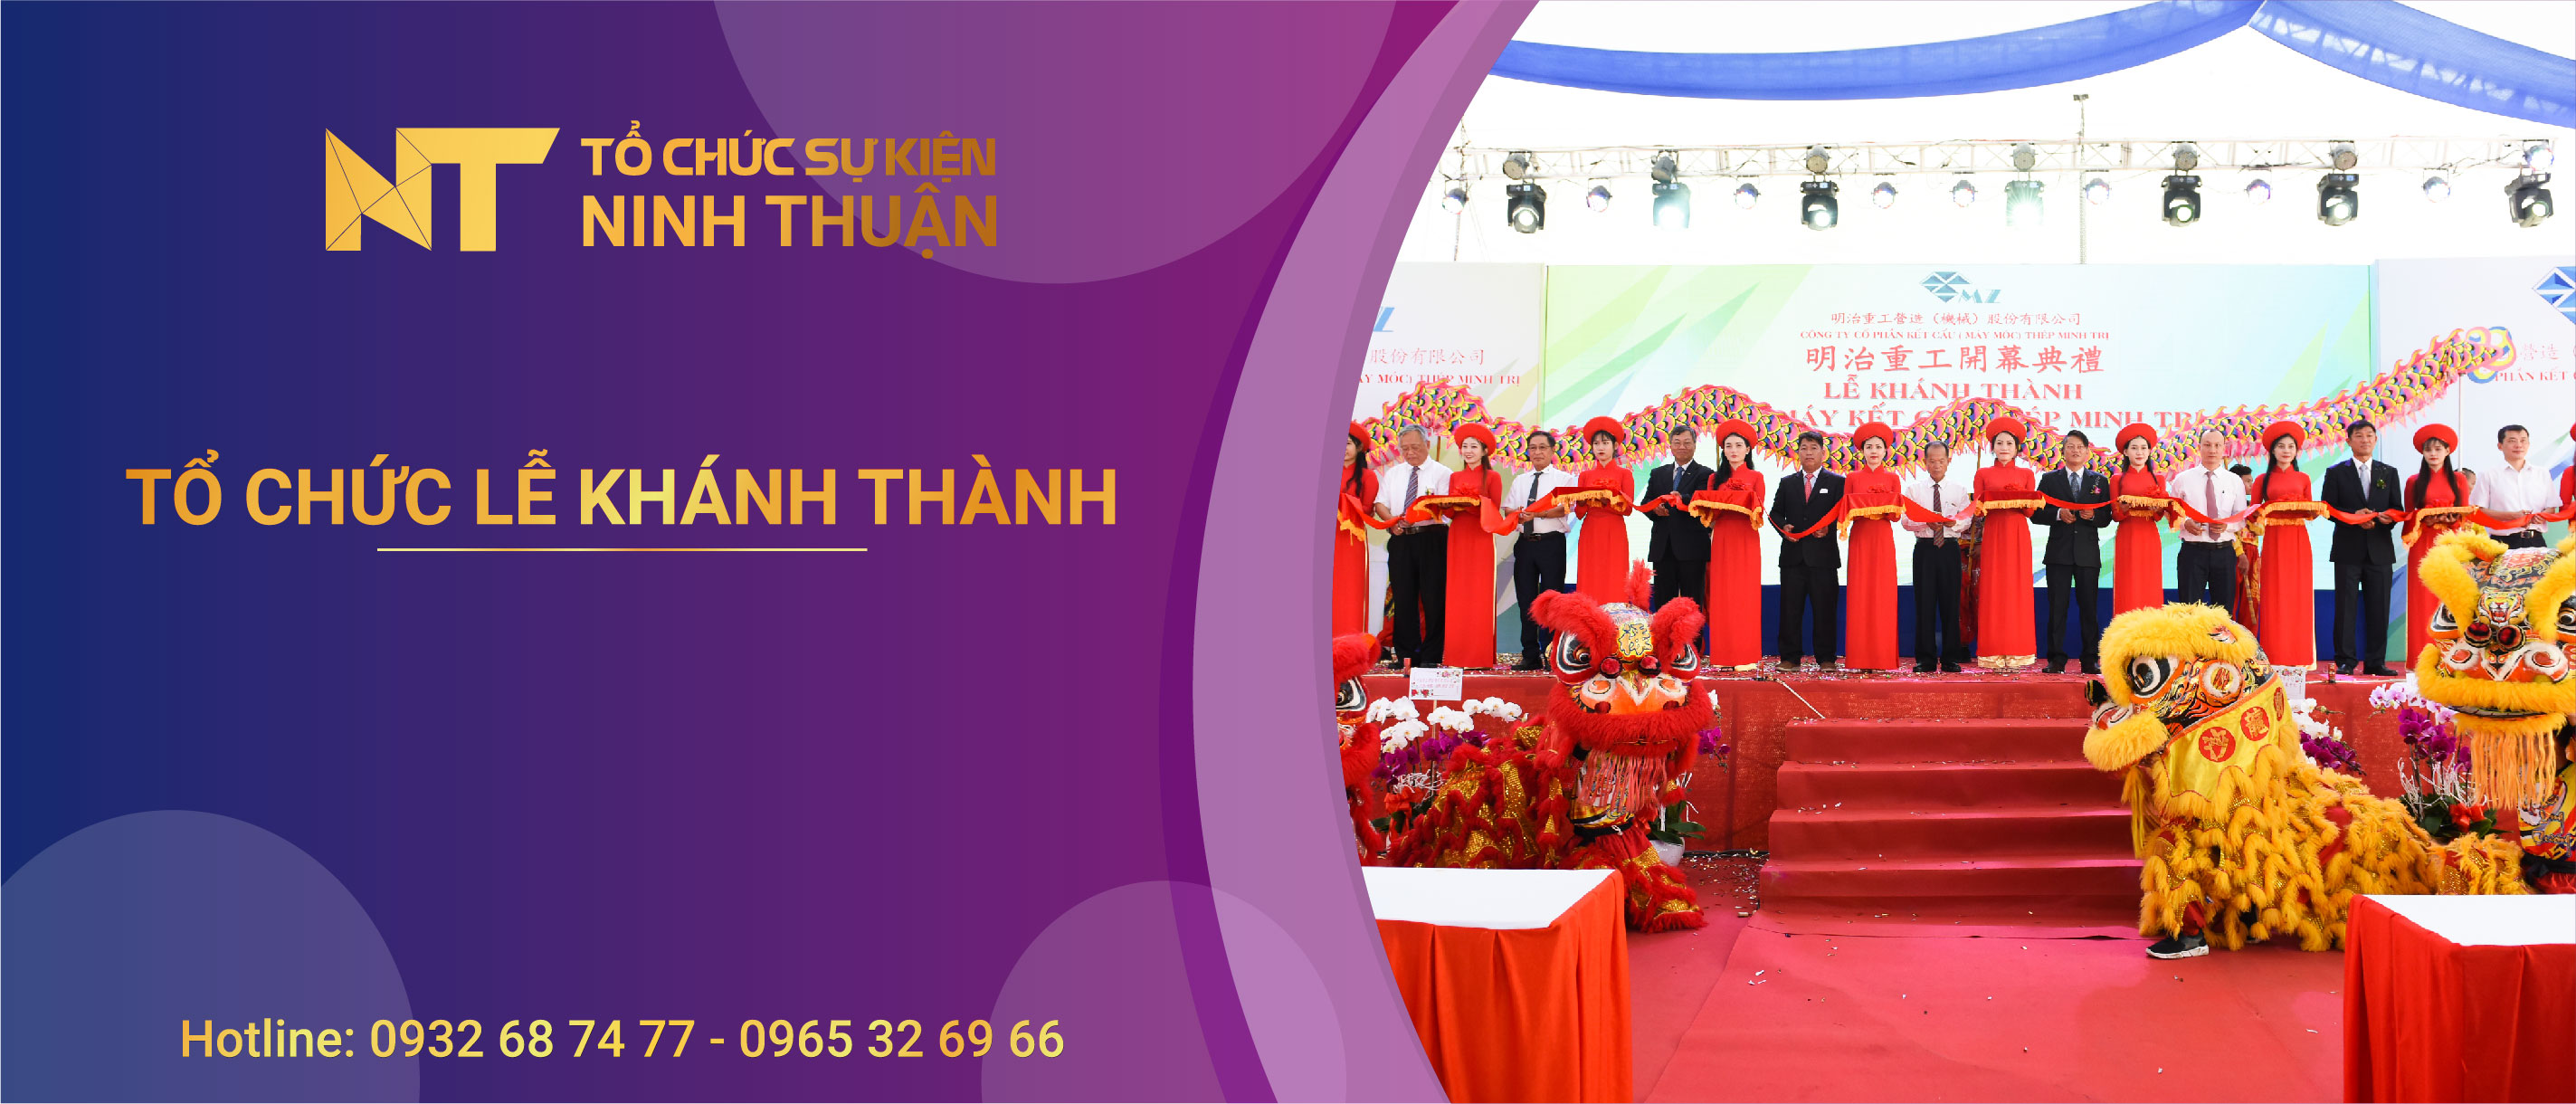 Tổ chức lễ khánh thành chuyên nghiệp tại Ninh Thuận